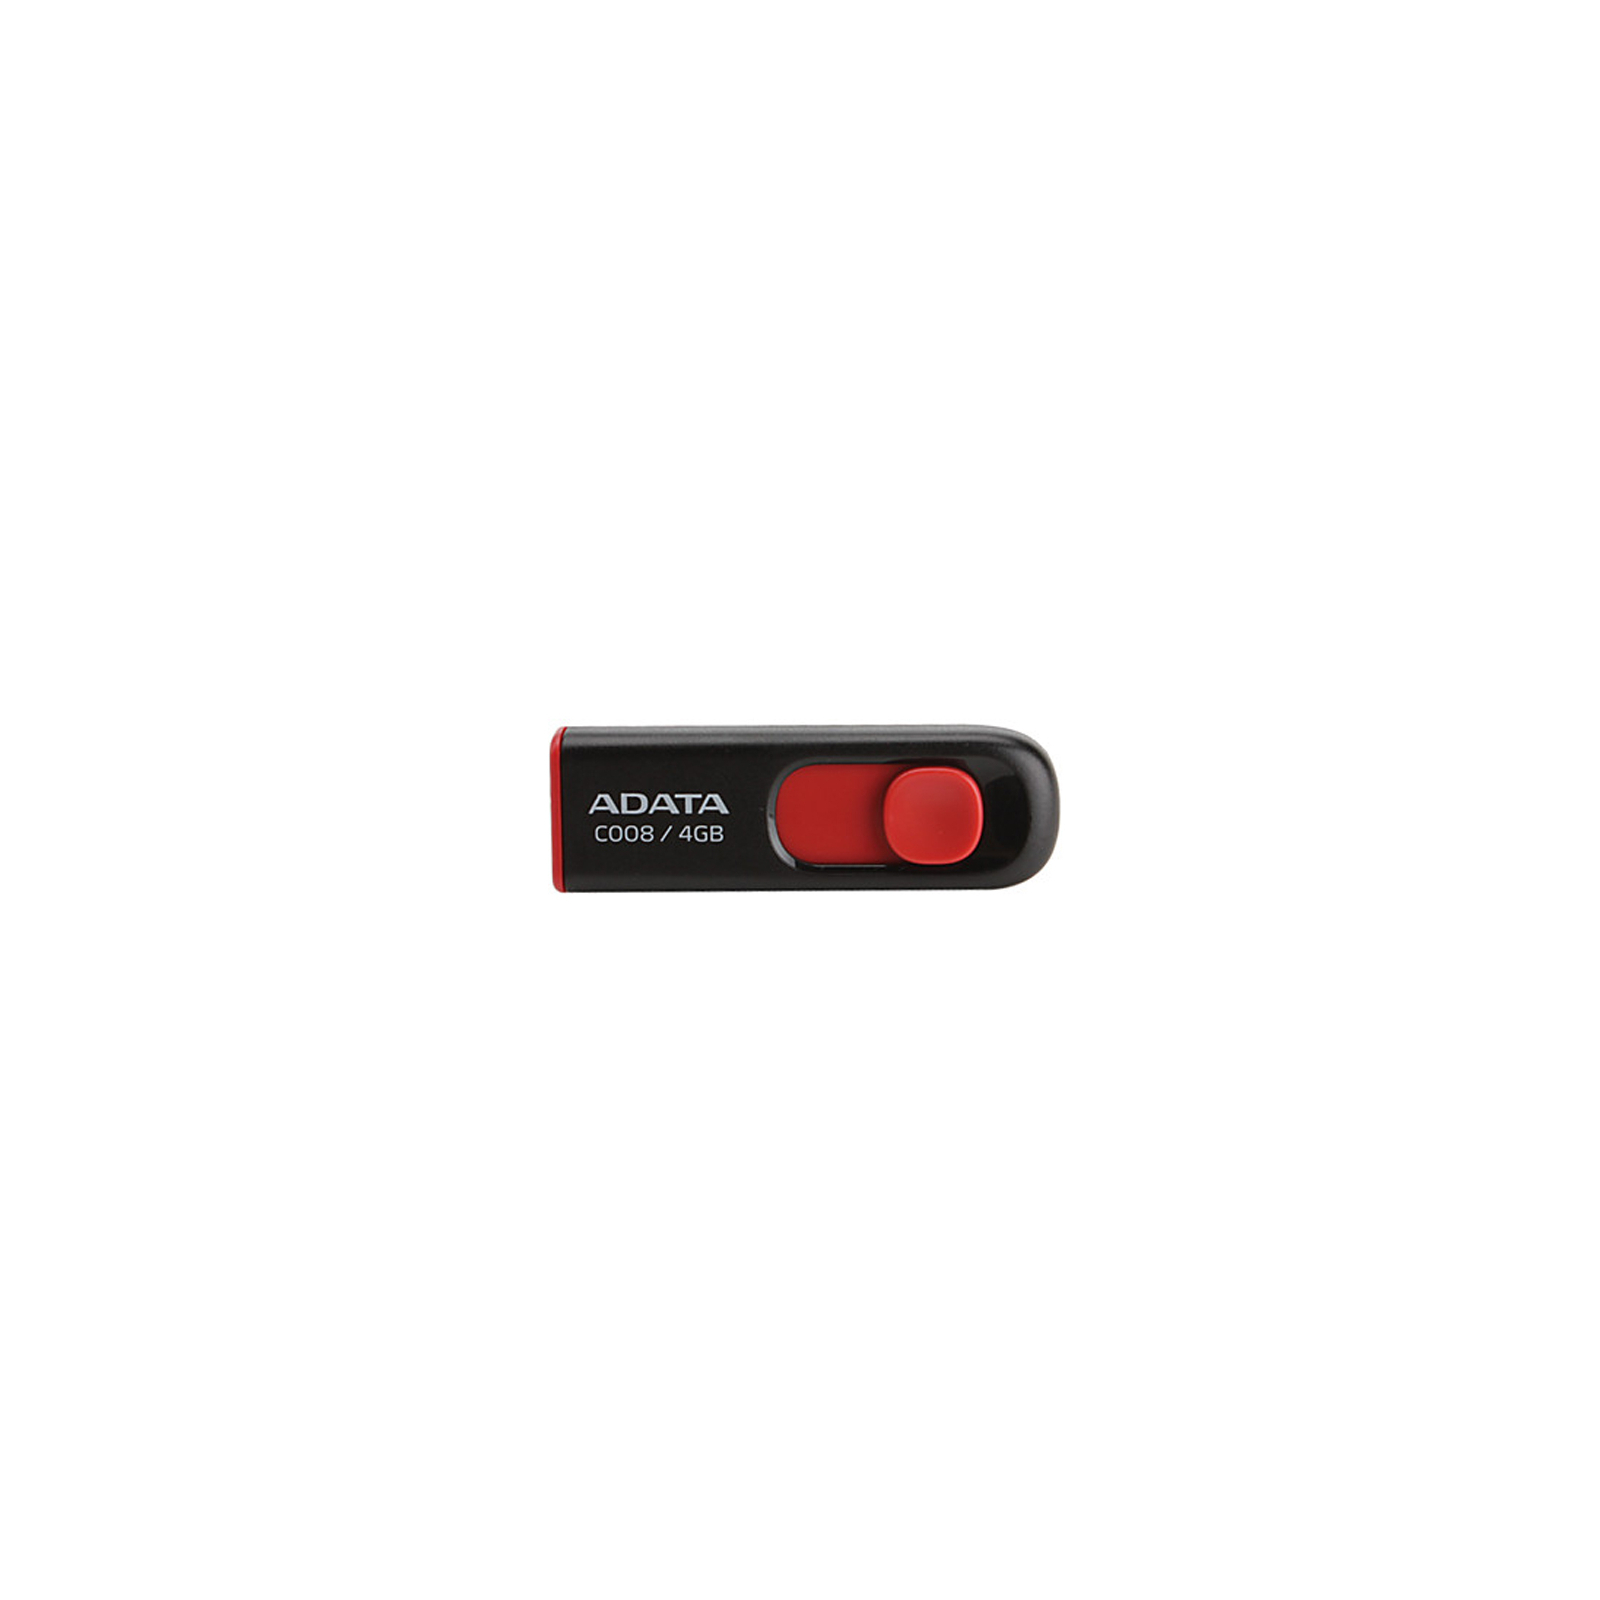 USB флеш накопитель ADATA 4Gb C008 Black USB 2.0 (AC008-4G-RKD)